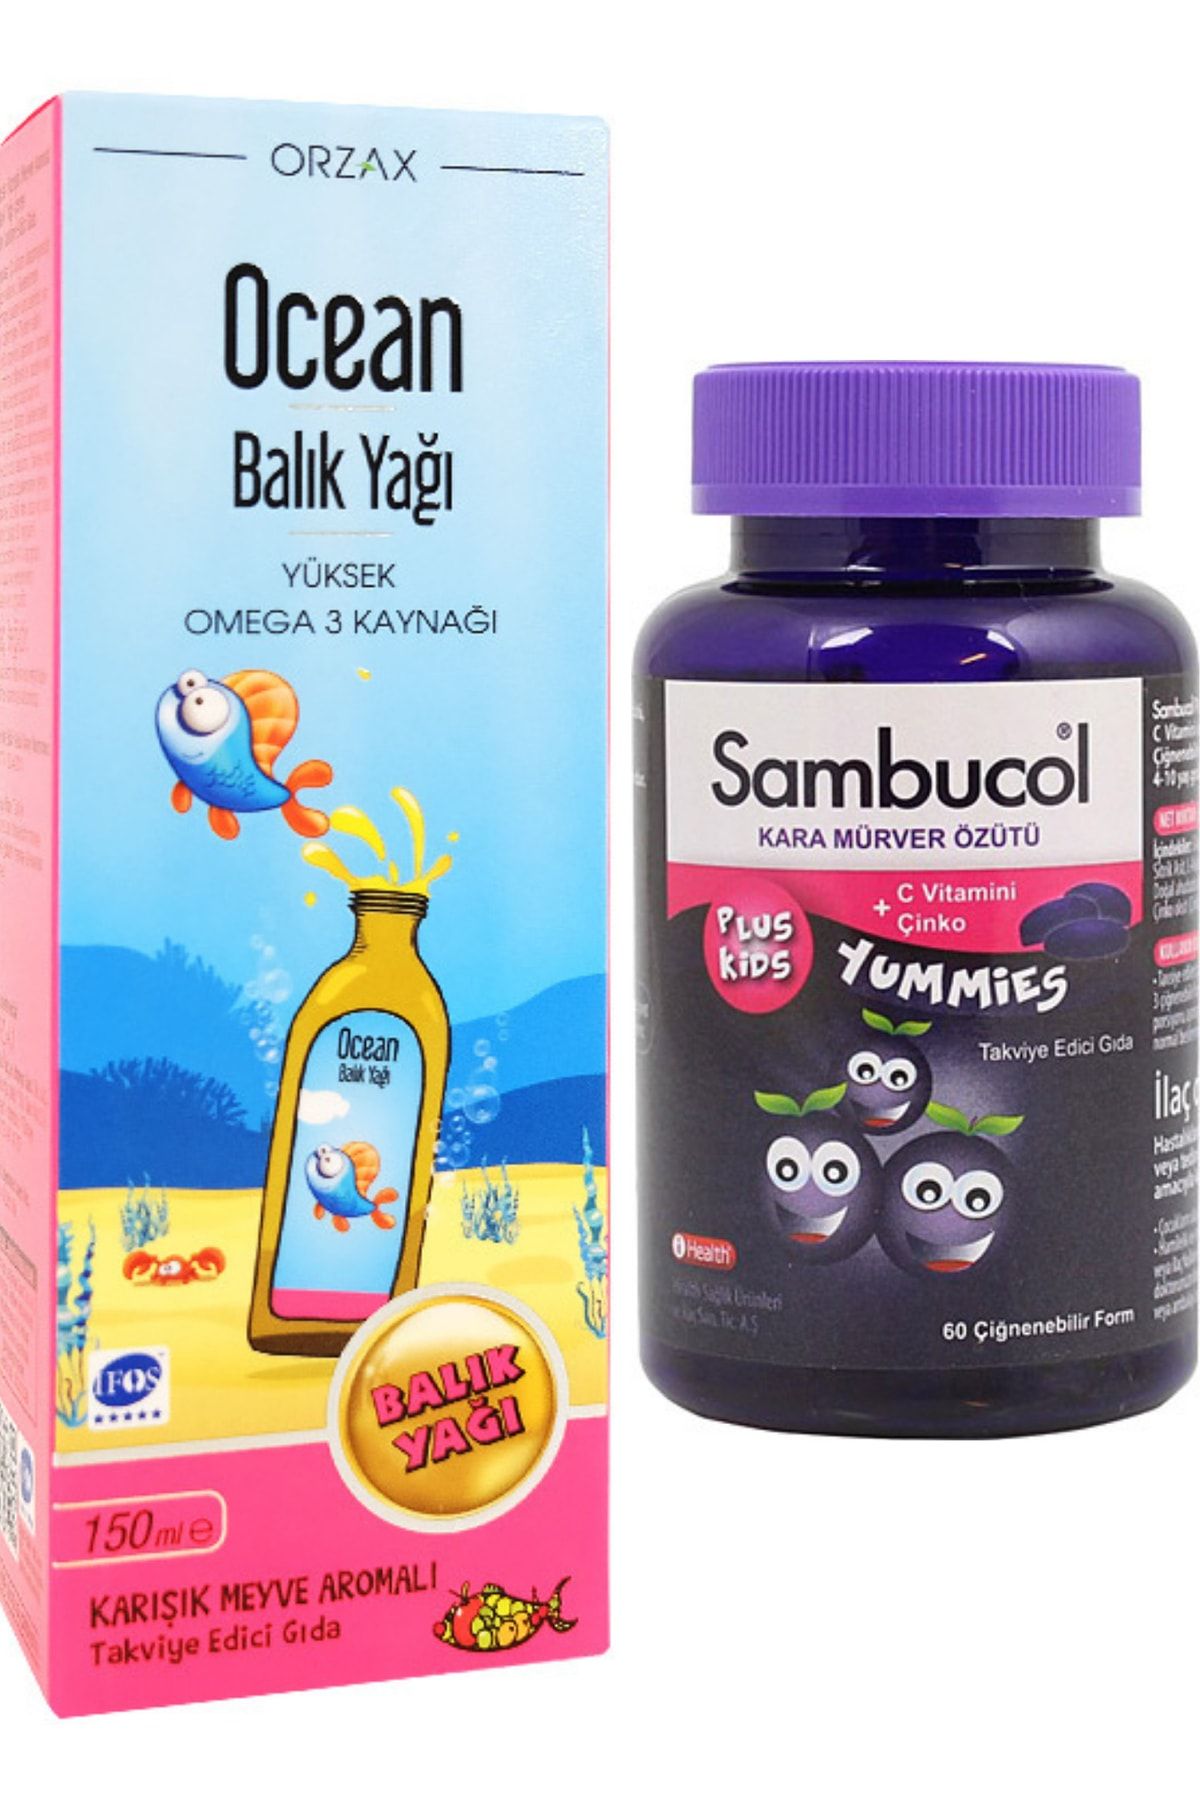 Ocean Balık Yağı Şurup Karışık Meyve Aromalı 150 ml + Sambucol Plus Kids Yummies 60 Çiğnenebilir Form